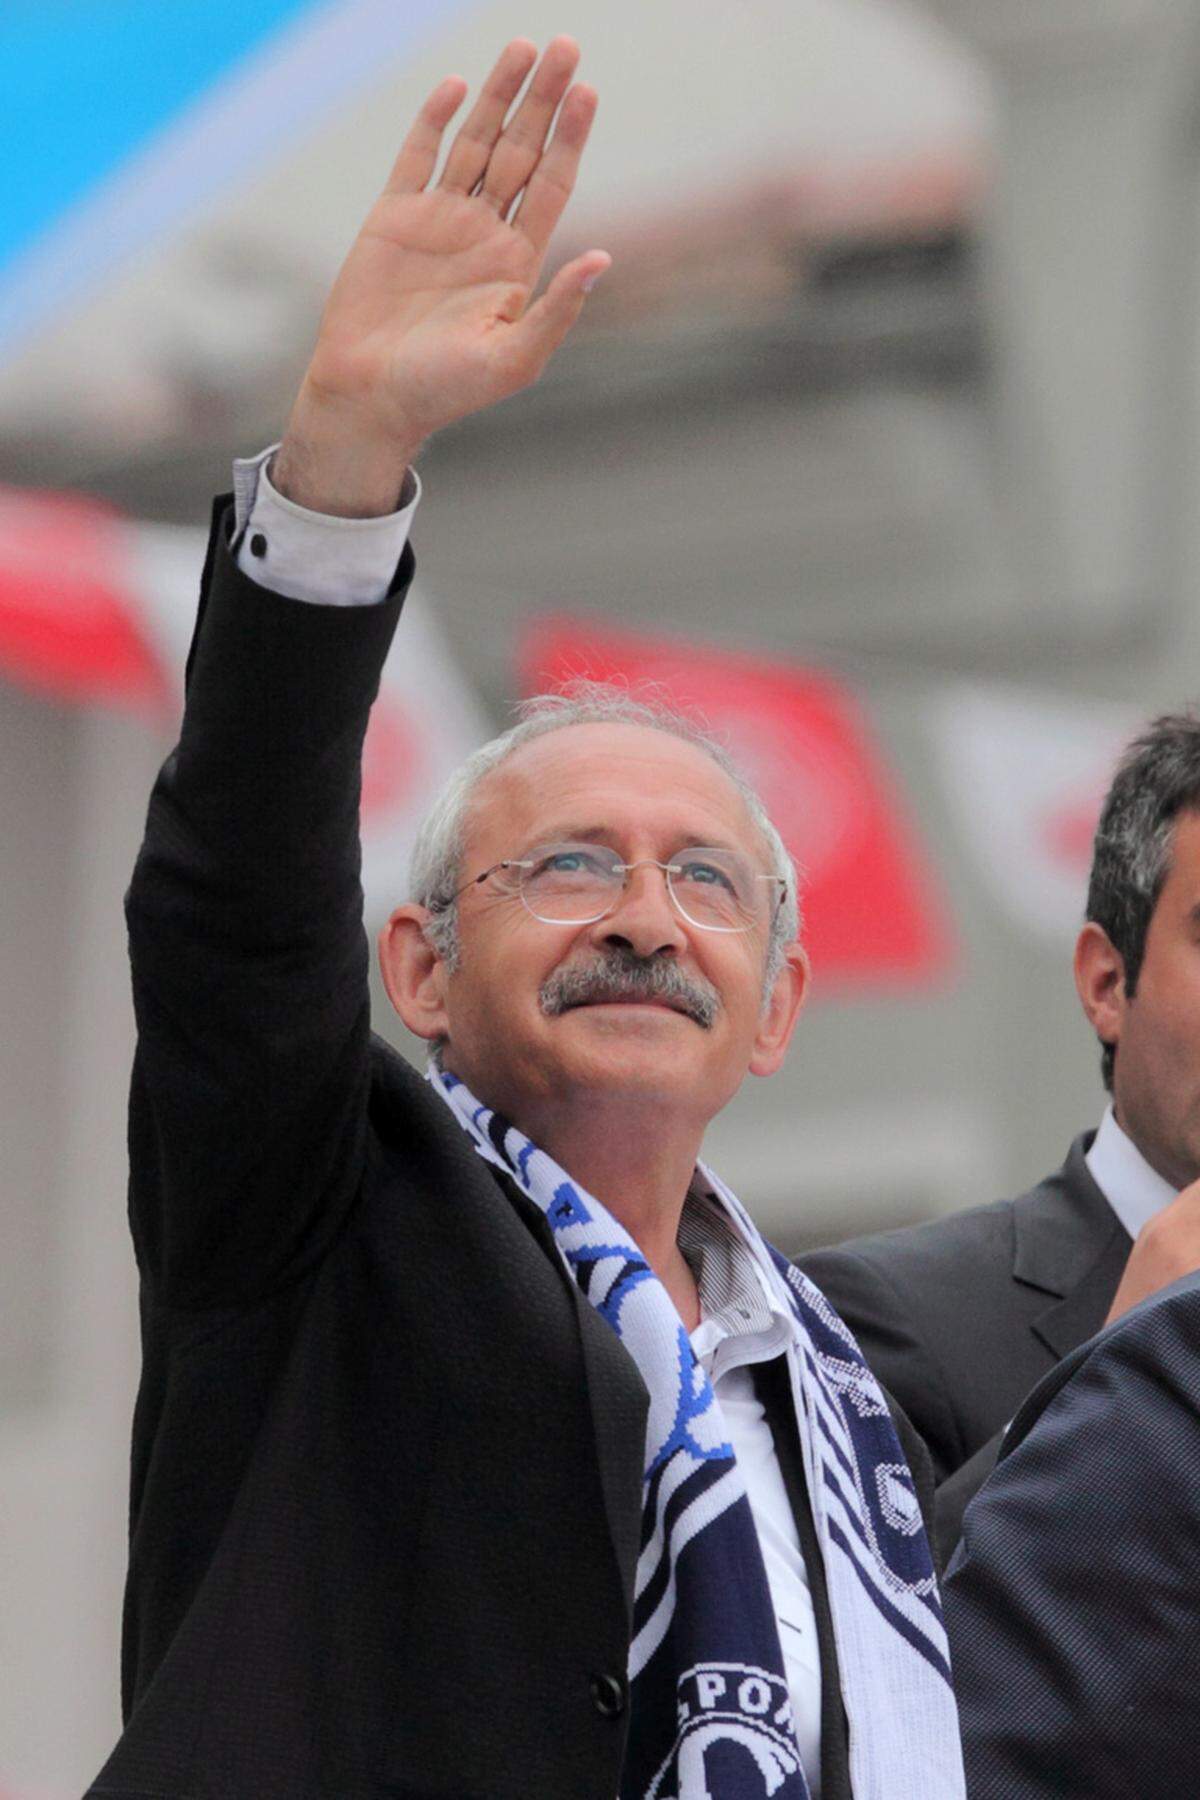 Die größte Oppositionspartei CHP (Republikanische Volkspartei) unter Kemal Kilicdaroglu lag deutlich zurück. Die säkuläre Partei setzte im Wahlkampf auf die Themen Korruption, Arbeitslosigkeit und Freiheitsrechte.